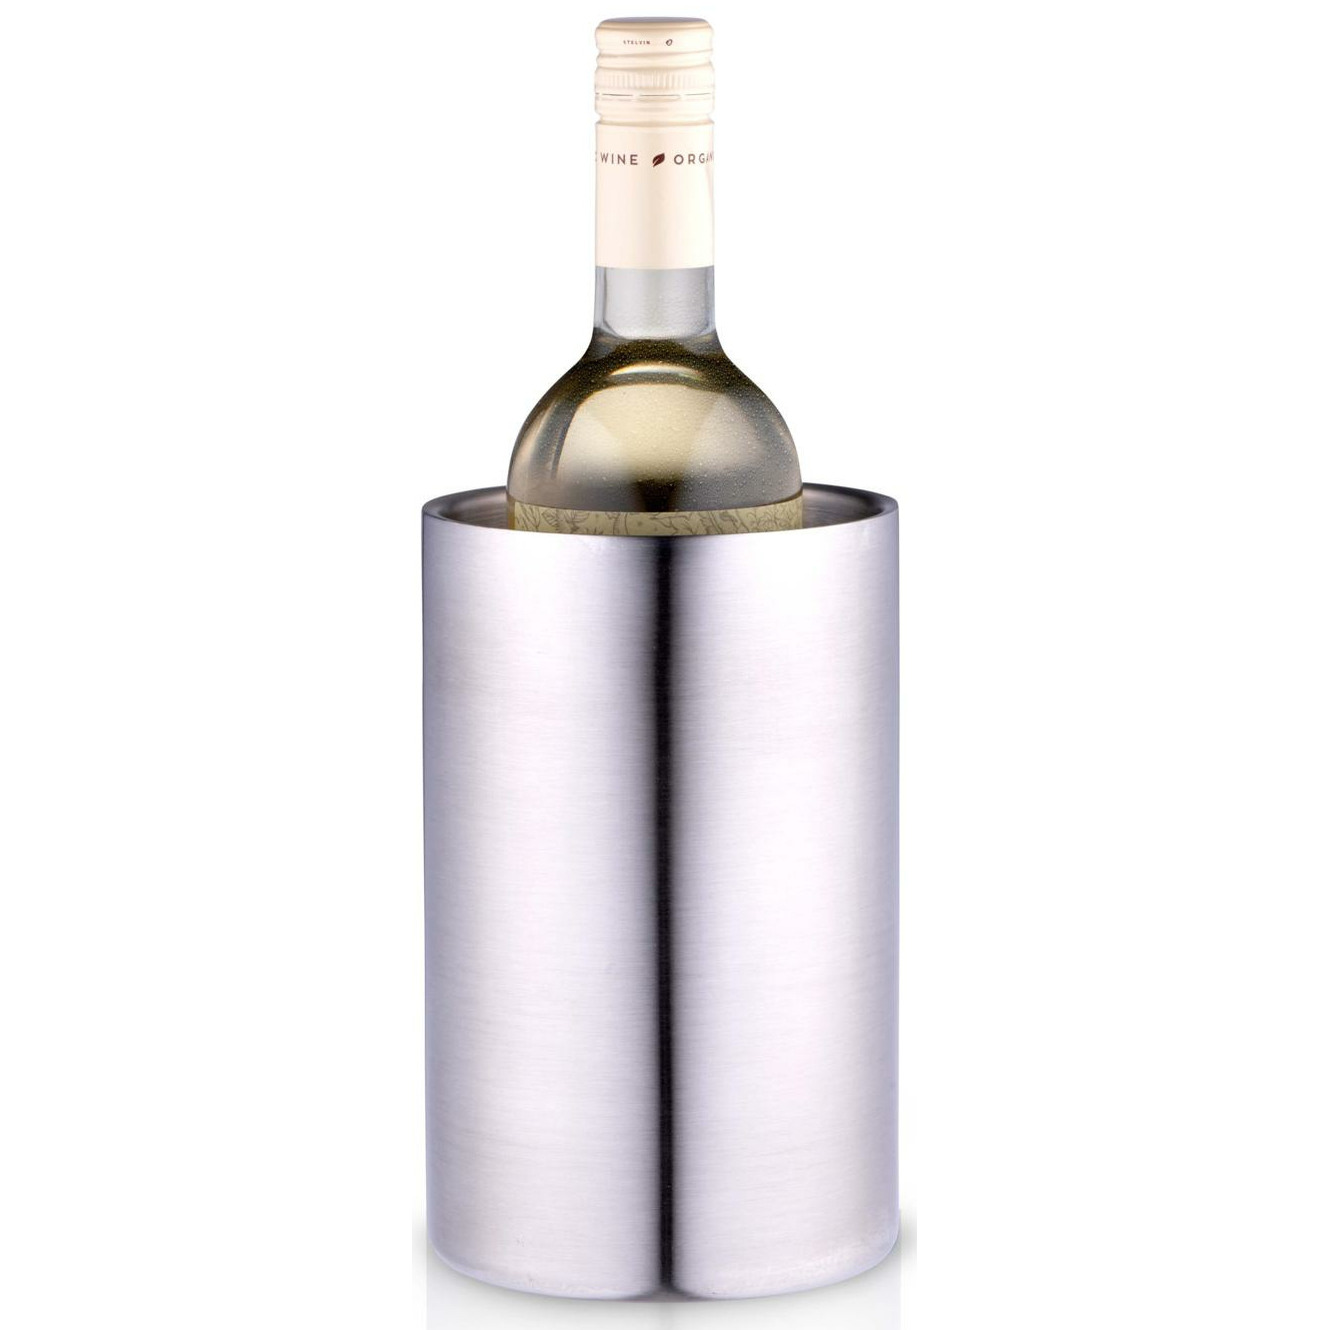 Champagne & wijnfles koeler-ijsemmer zilver rvs H19 x D12 cm Luxe stijlvolle uitvoering